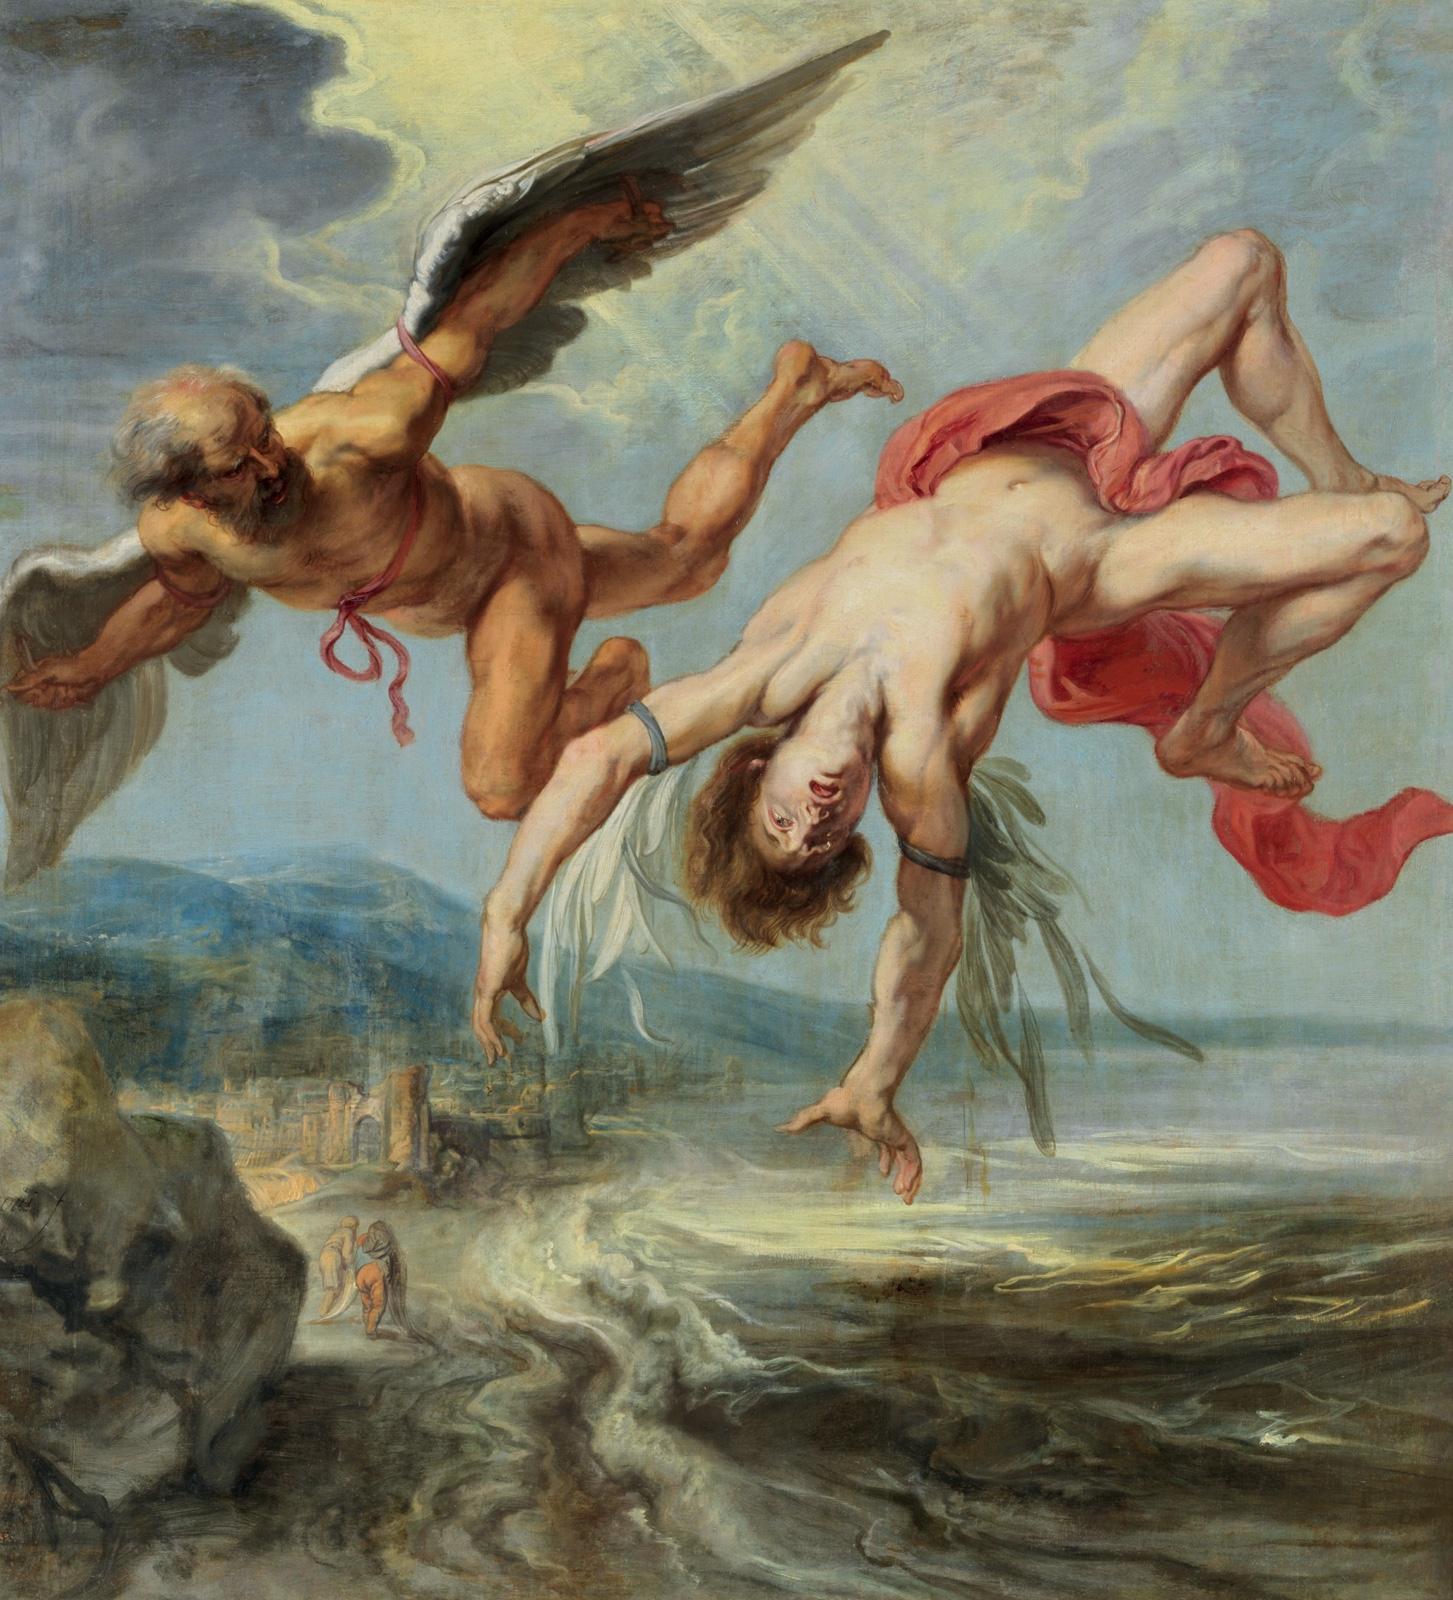 Jacob Peeter Gowy, *La caída de Ícaro*, 1636-1638. ©Museo del Prado